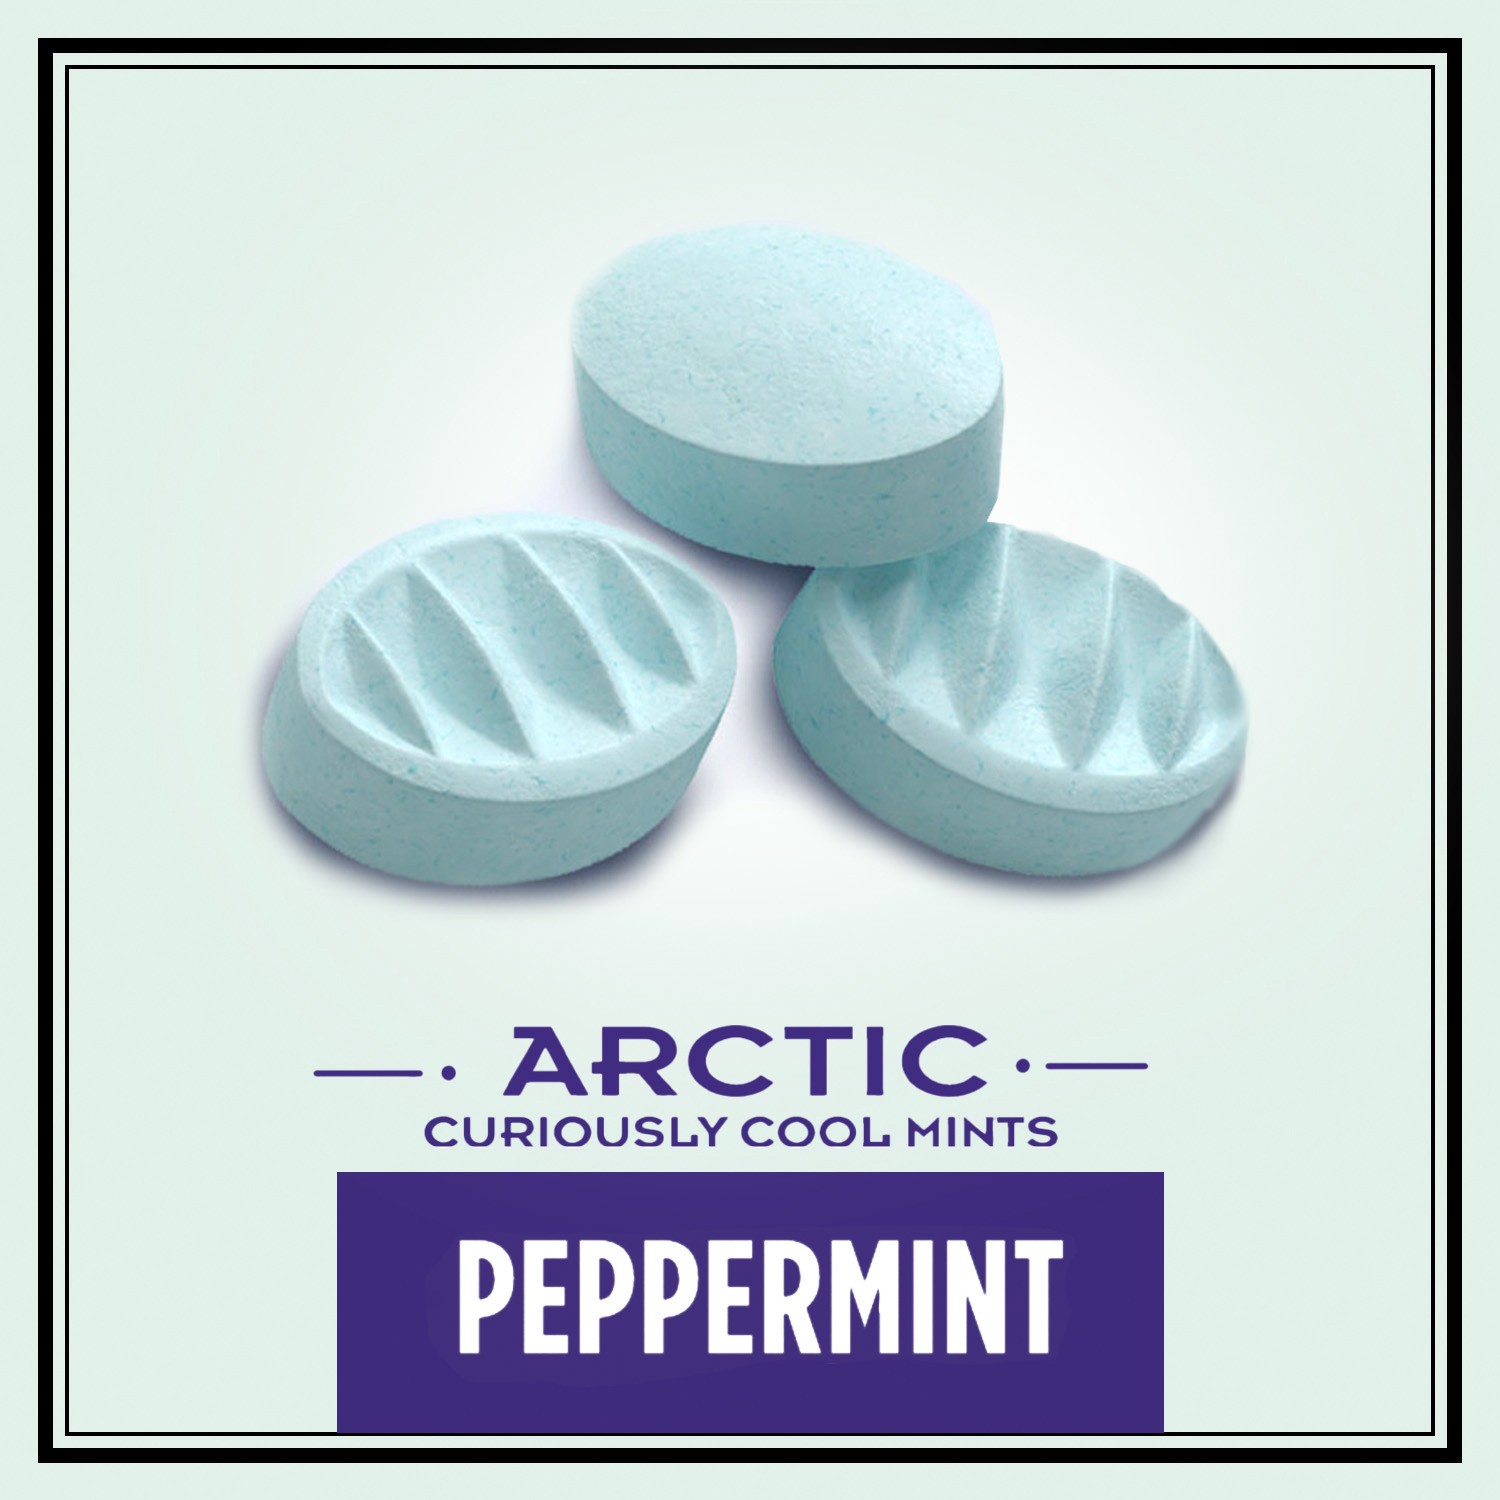 Altoids Mints, Peppermint, Arctic